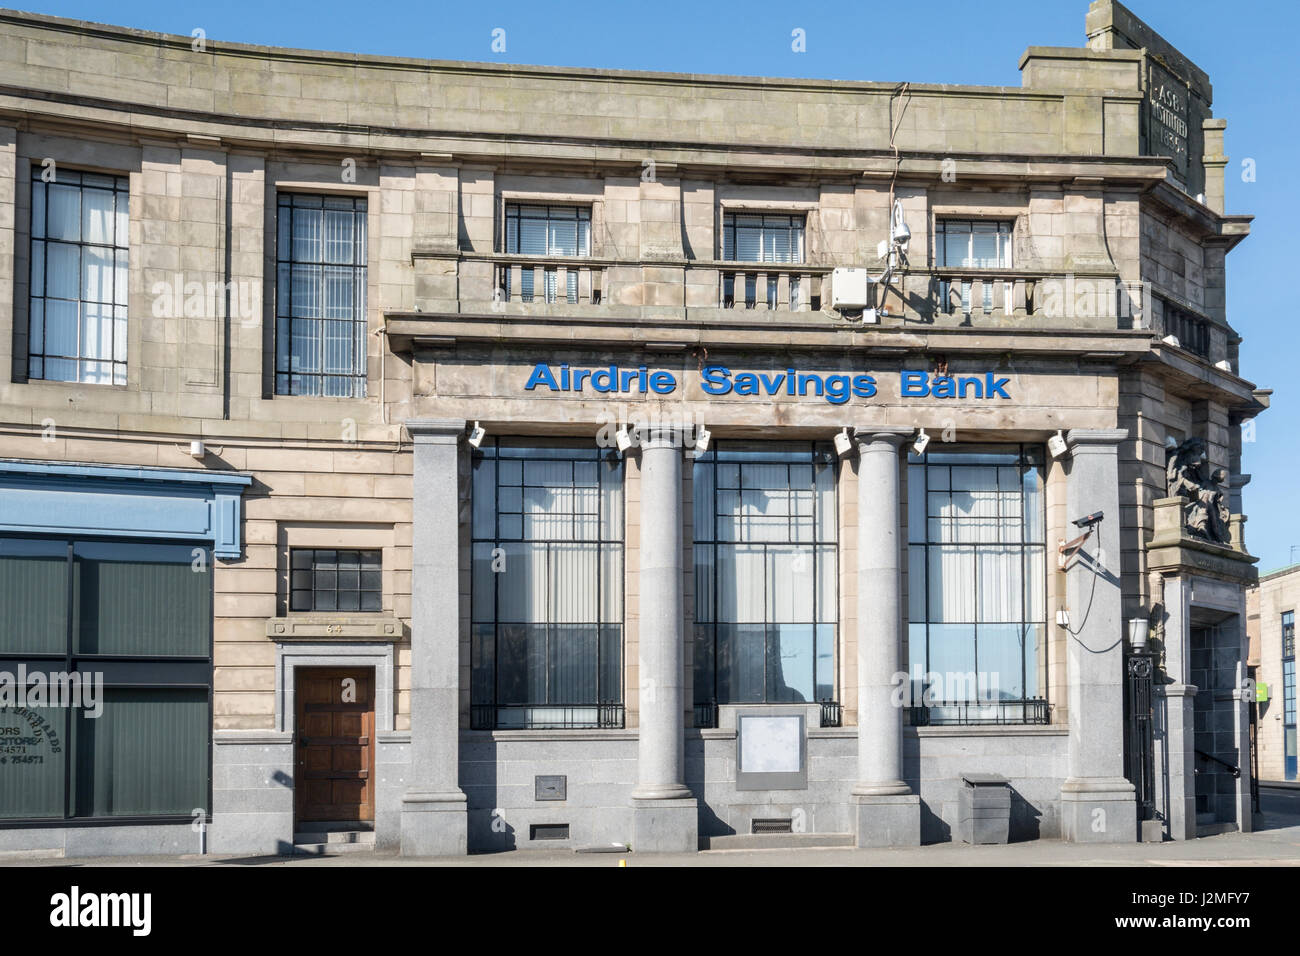 Le siège social de l'Airdrie Airdrie Savings Bank, la dernière banque d'épargne indépendante au Royaume-Uni, qui a fermé en 2017 après 182 ans Banque D'Images